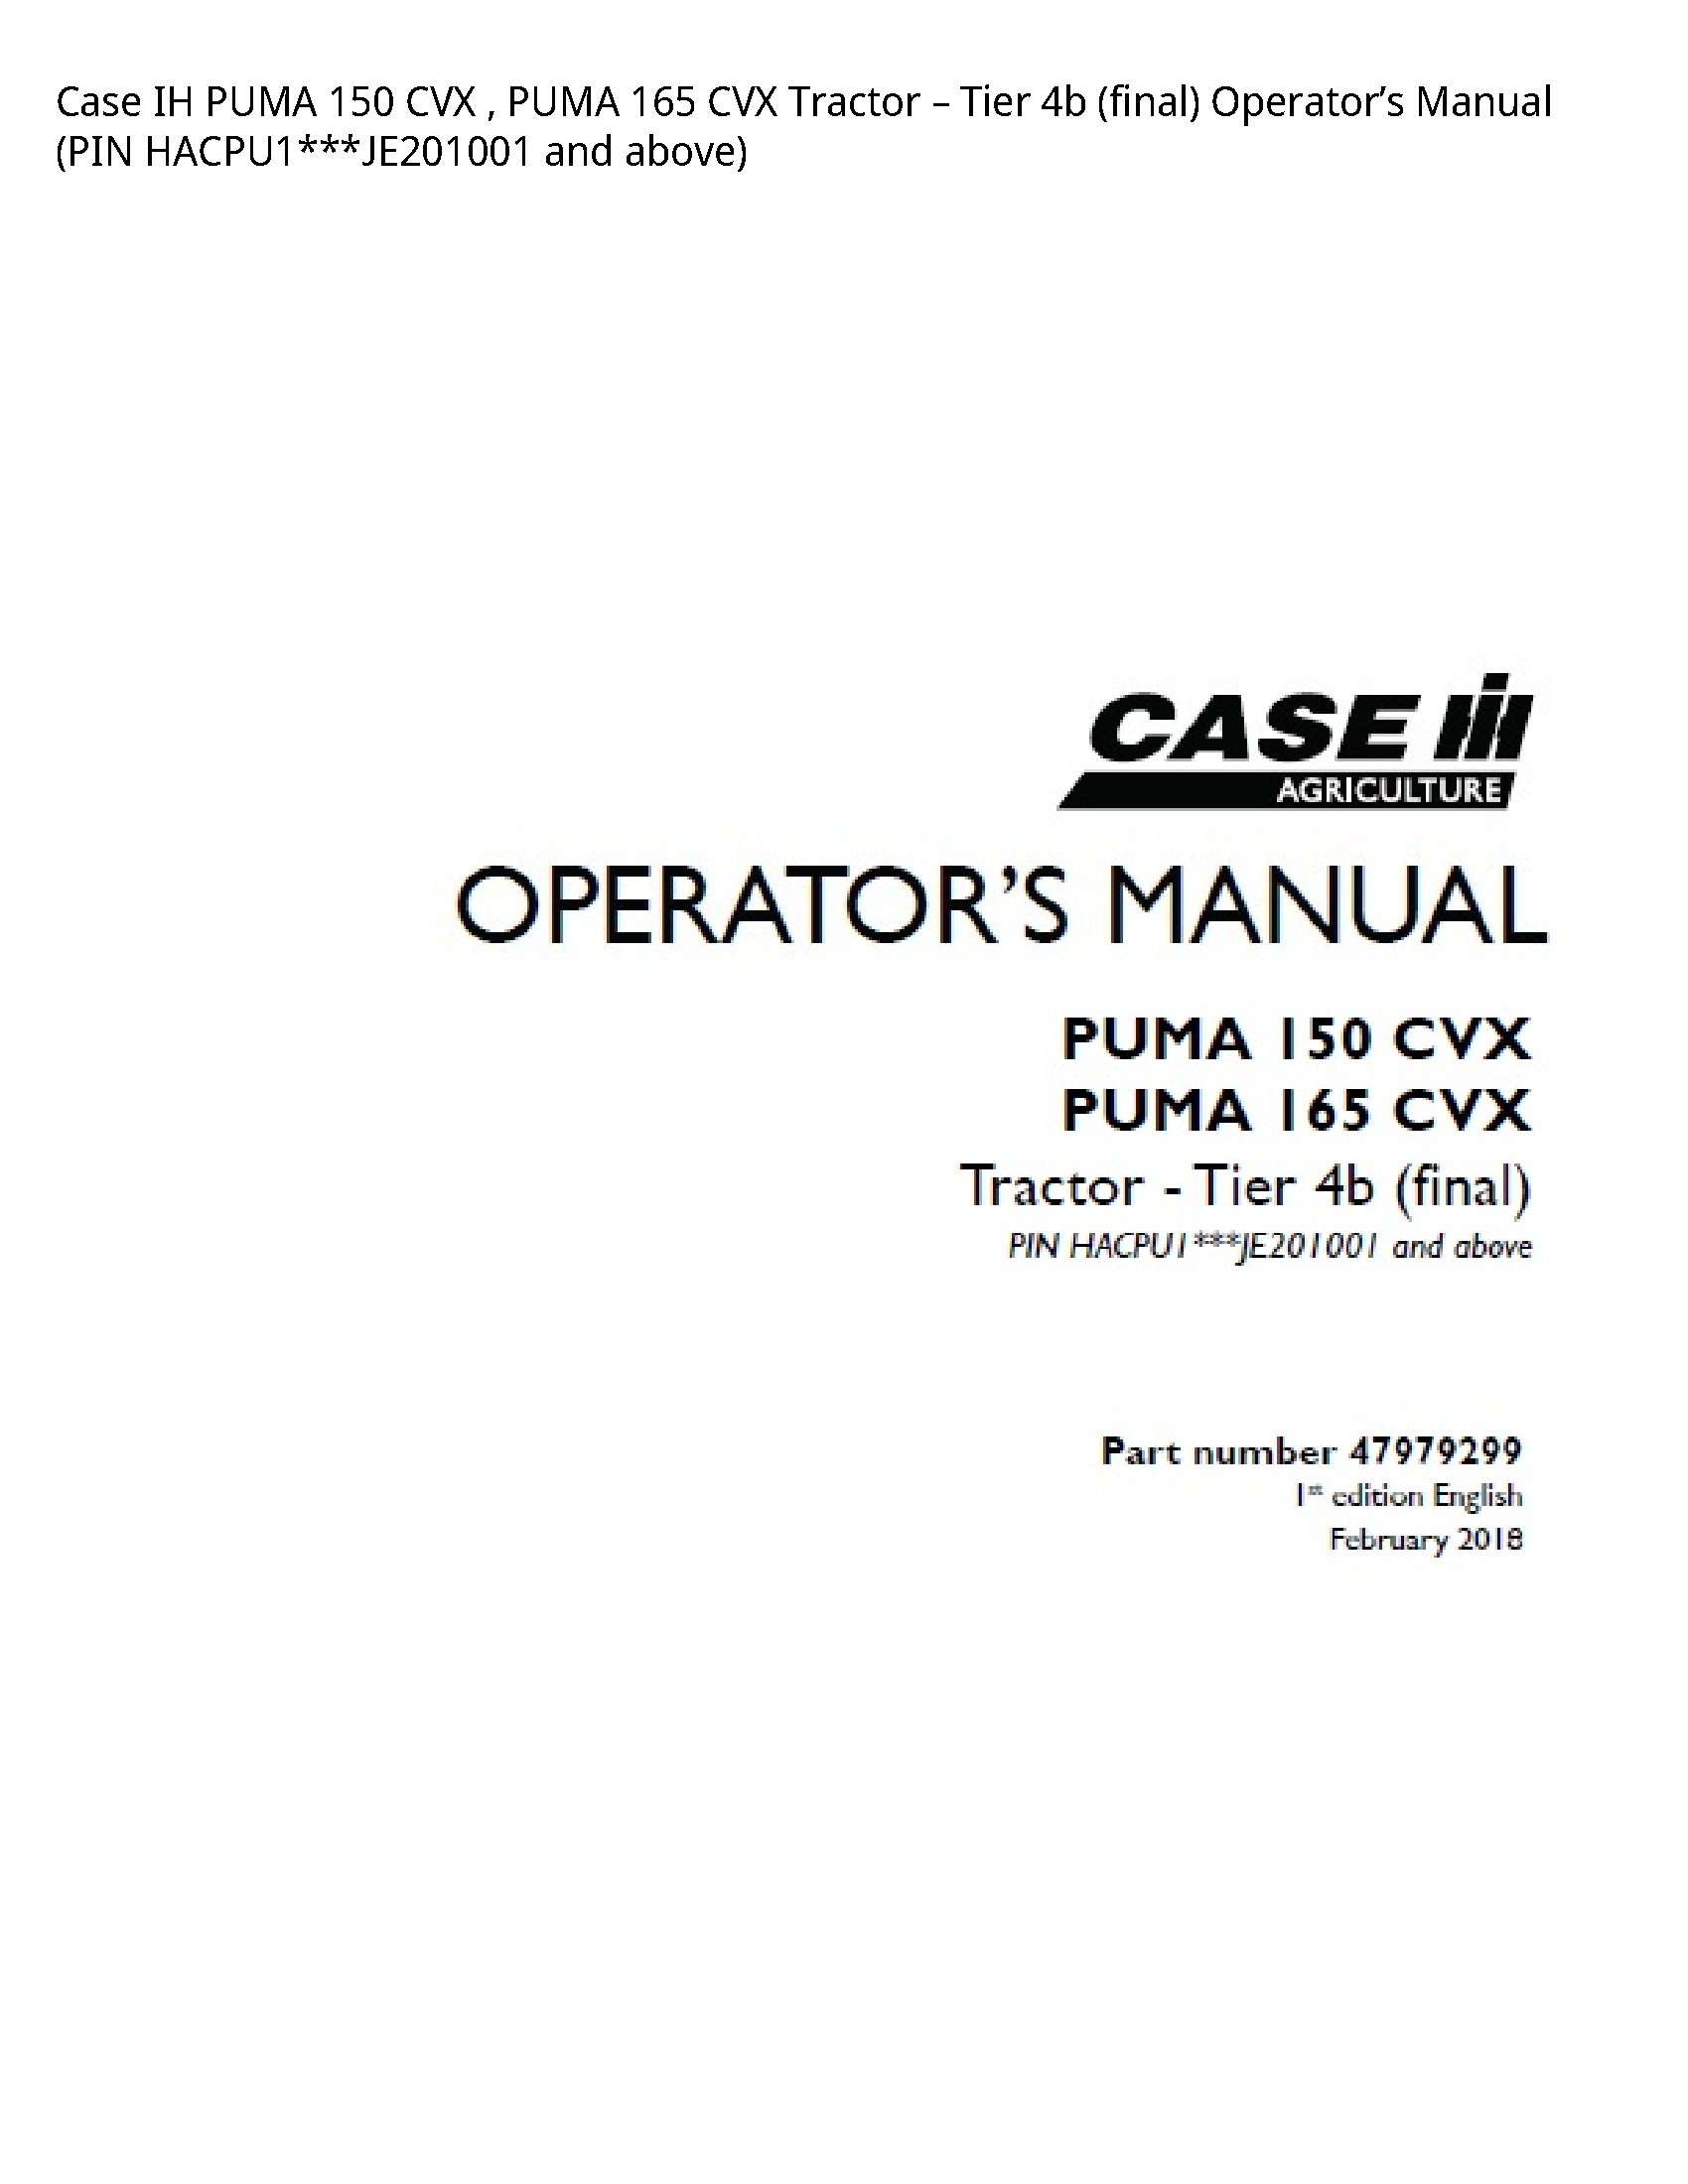 Case/Case IH 150 IH PUMA CVX PUMA CVX Tractor Tier (final) Operator’s manual